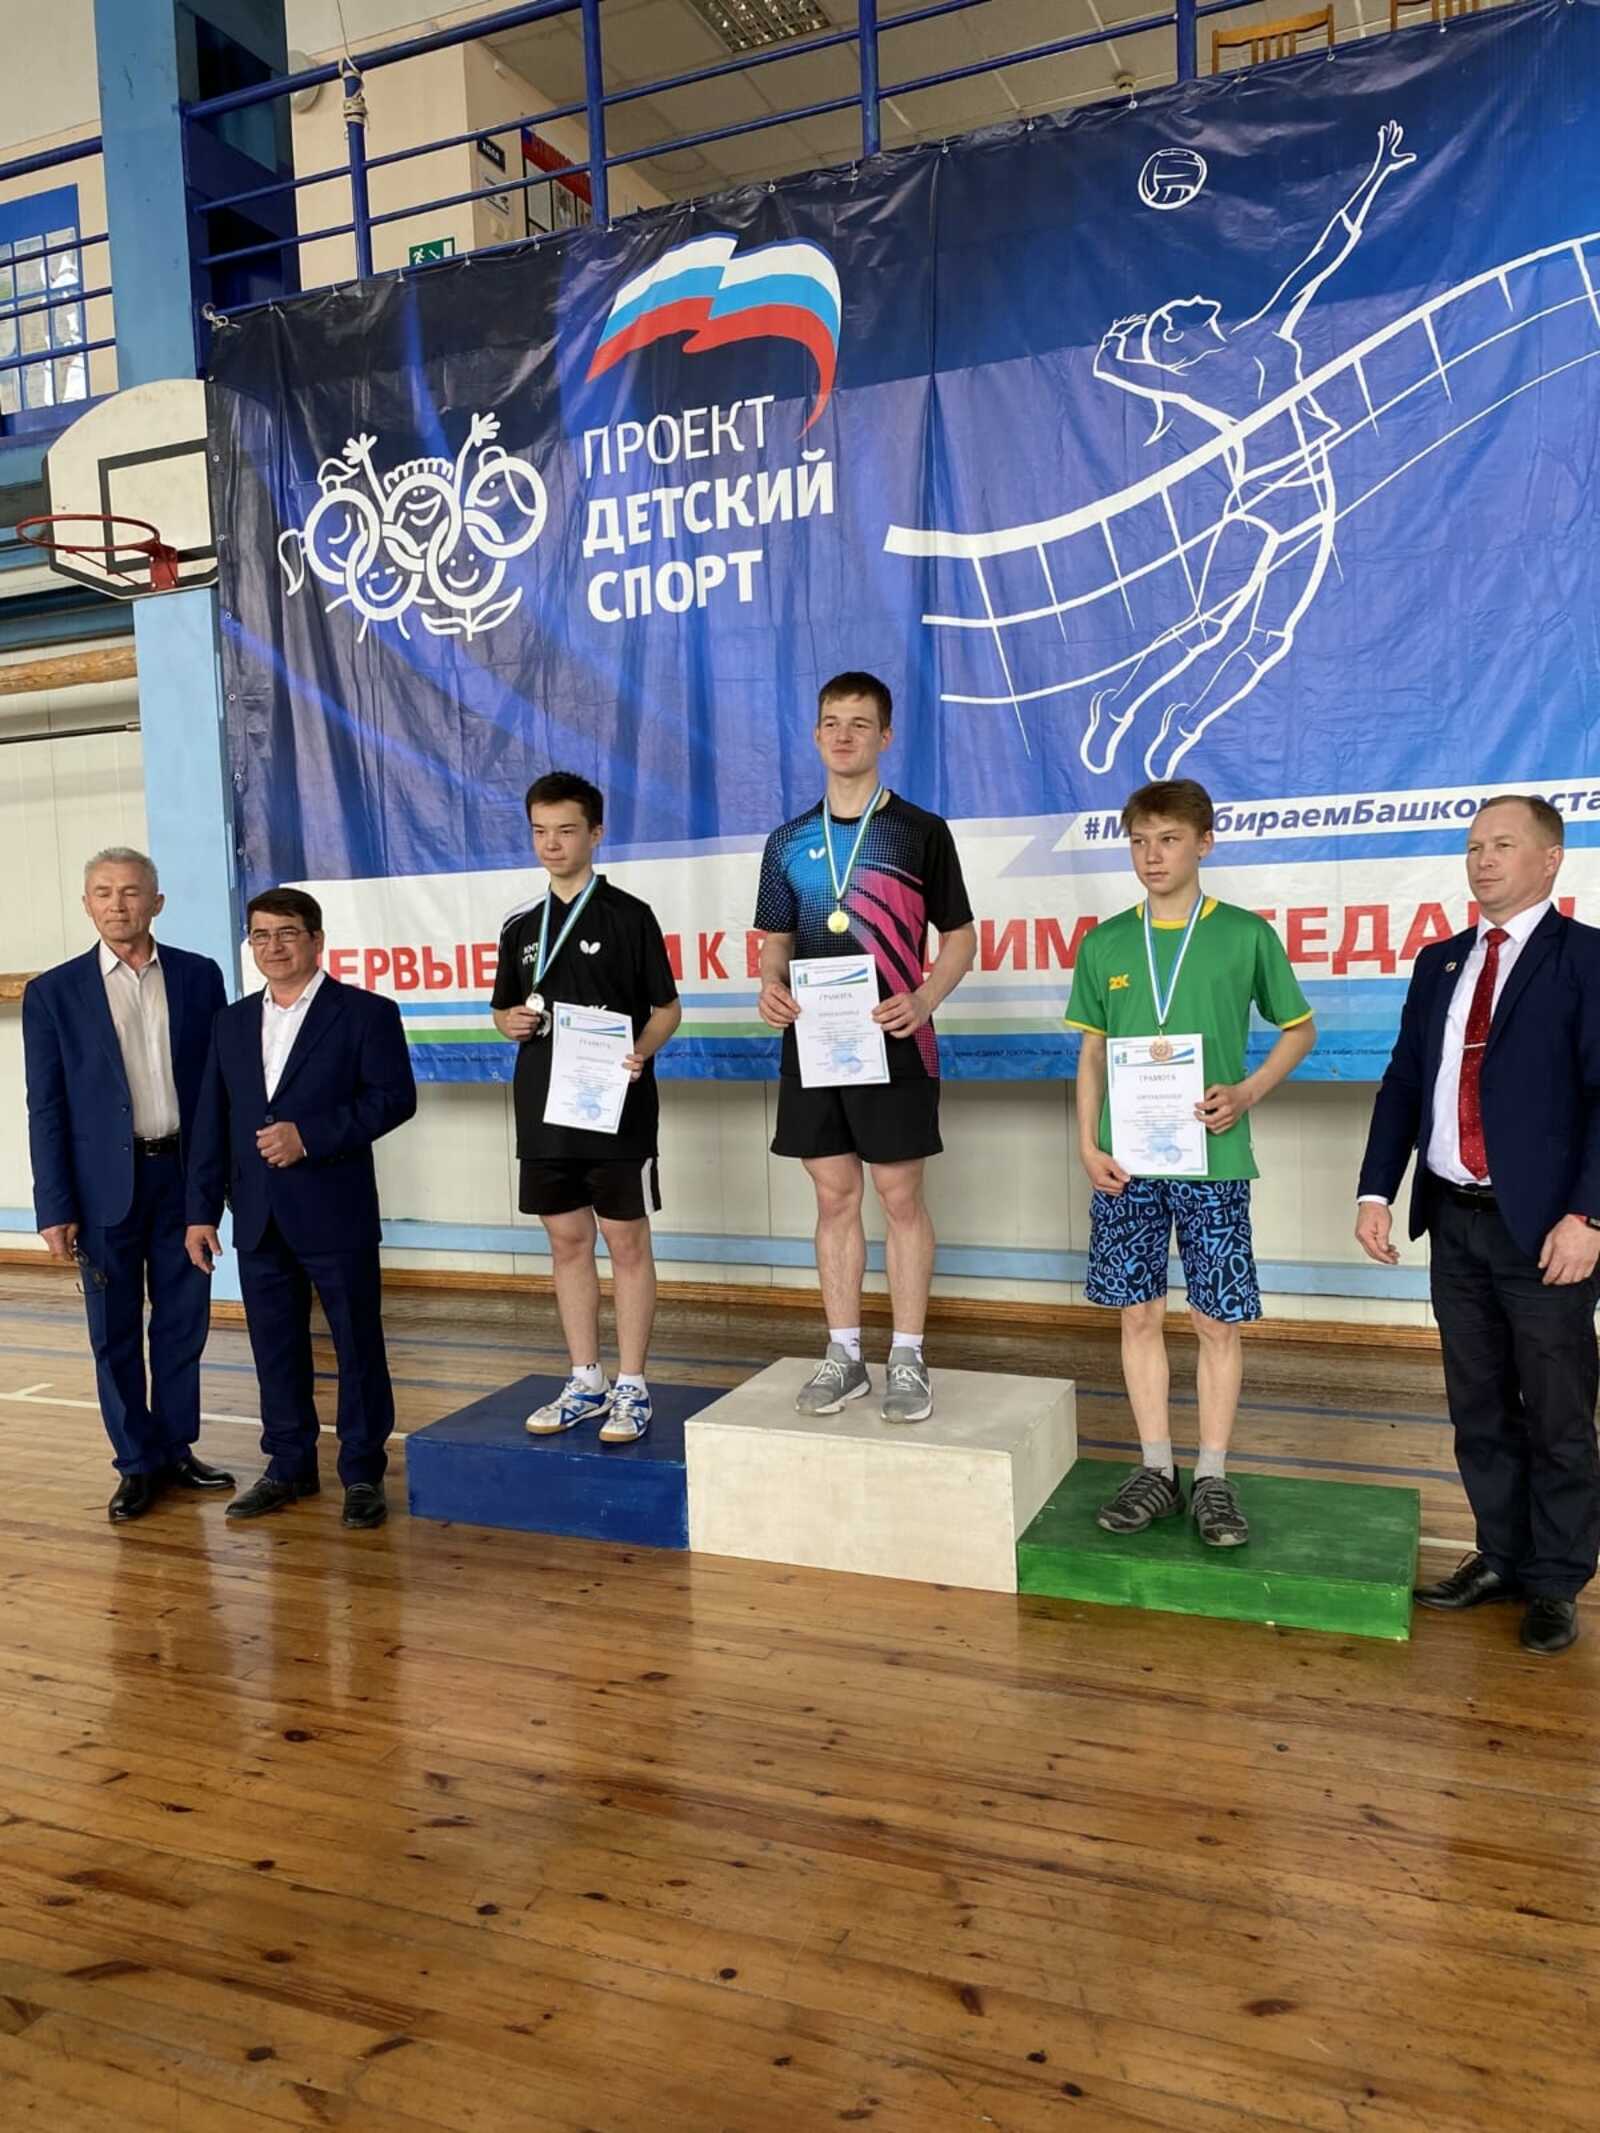 Макаров Роман завоевал золотую медаль по настольному теннису в зачет XXIV Спартакиады школьников РБ